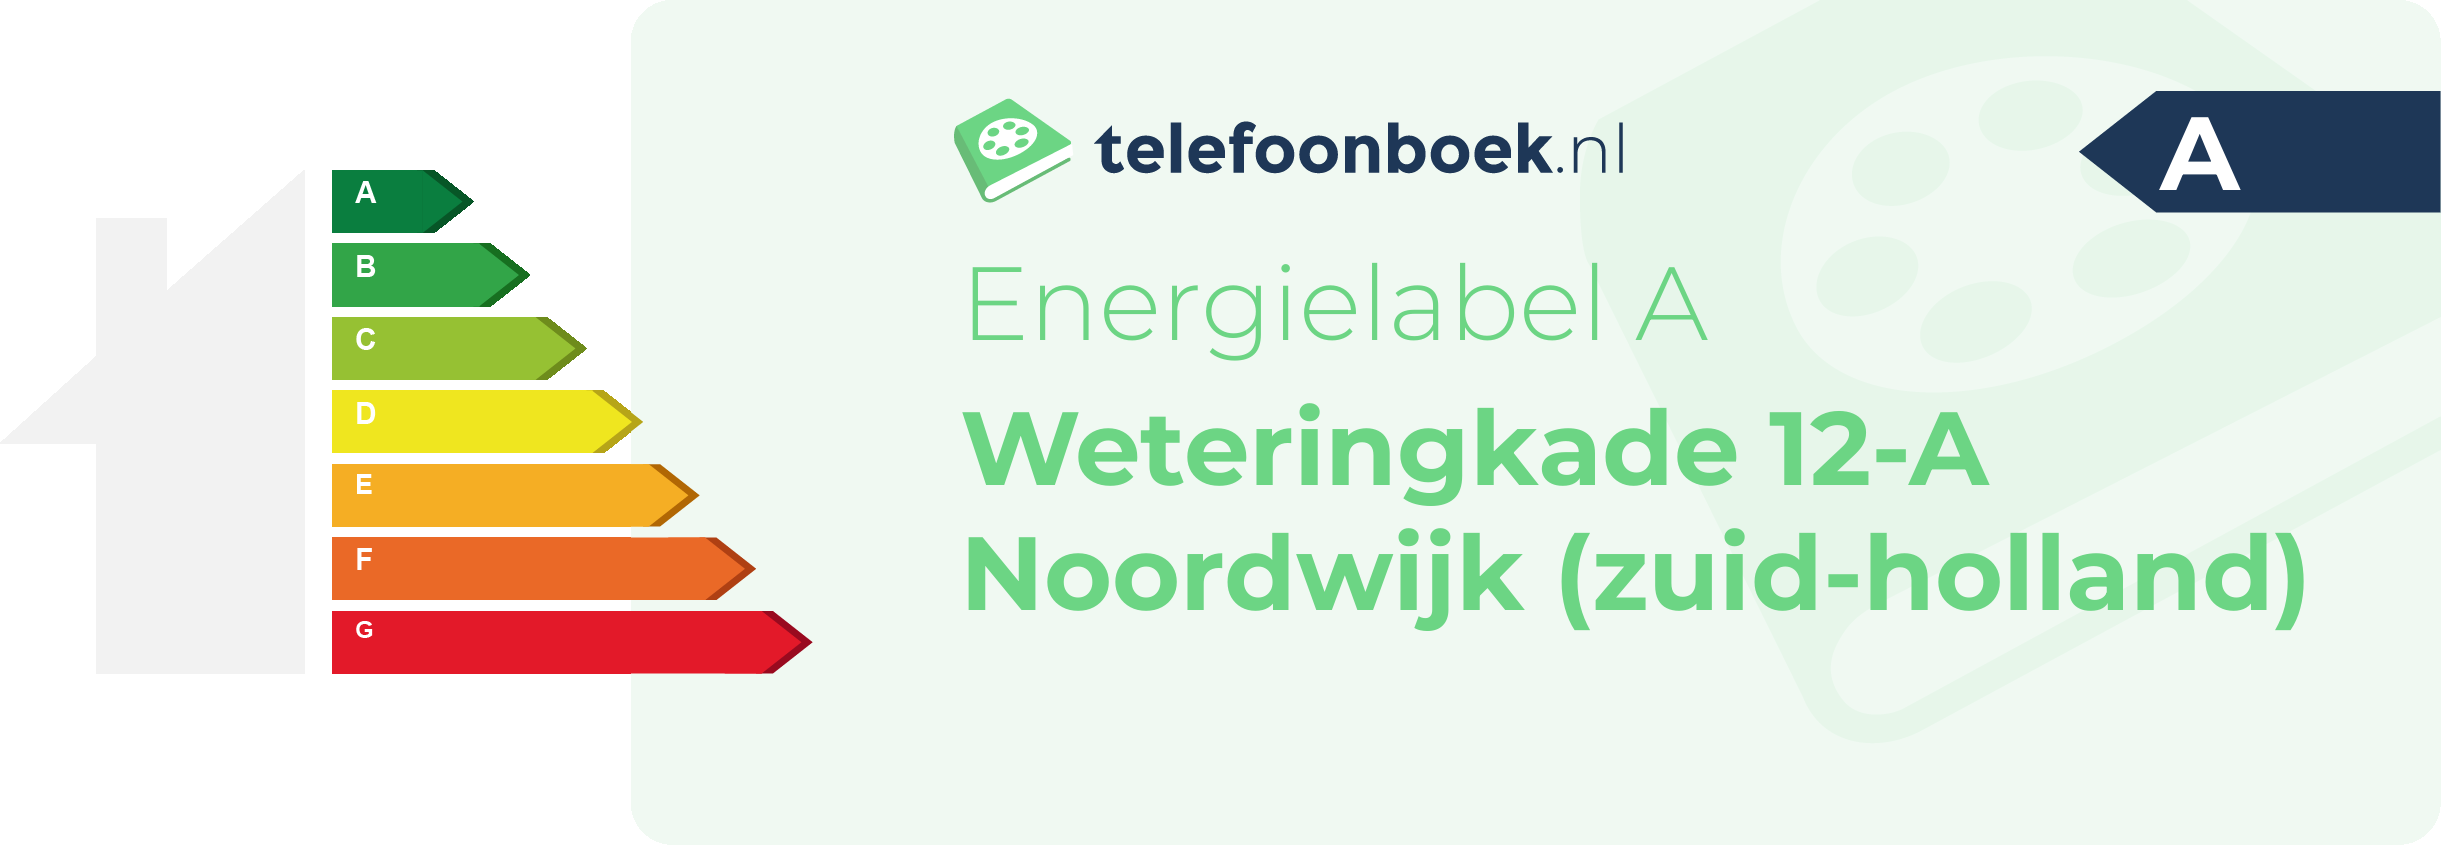 Energielabel Weteringkade 12-A Noordwijk (Zuid-Holland)